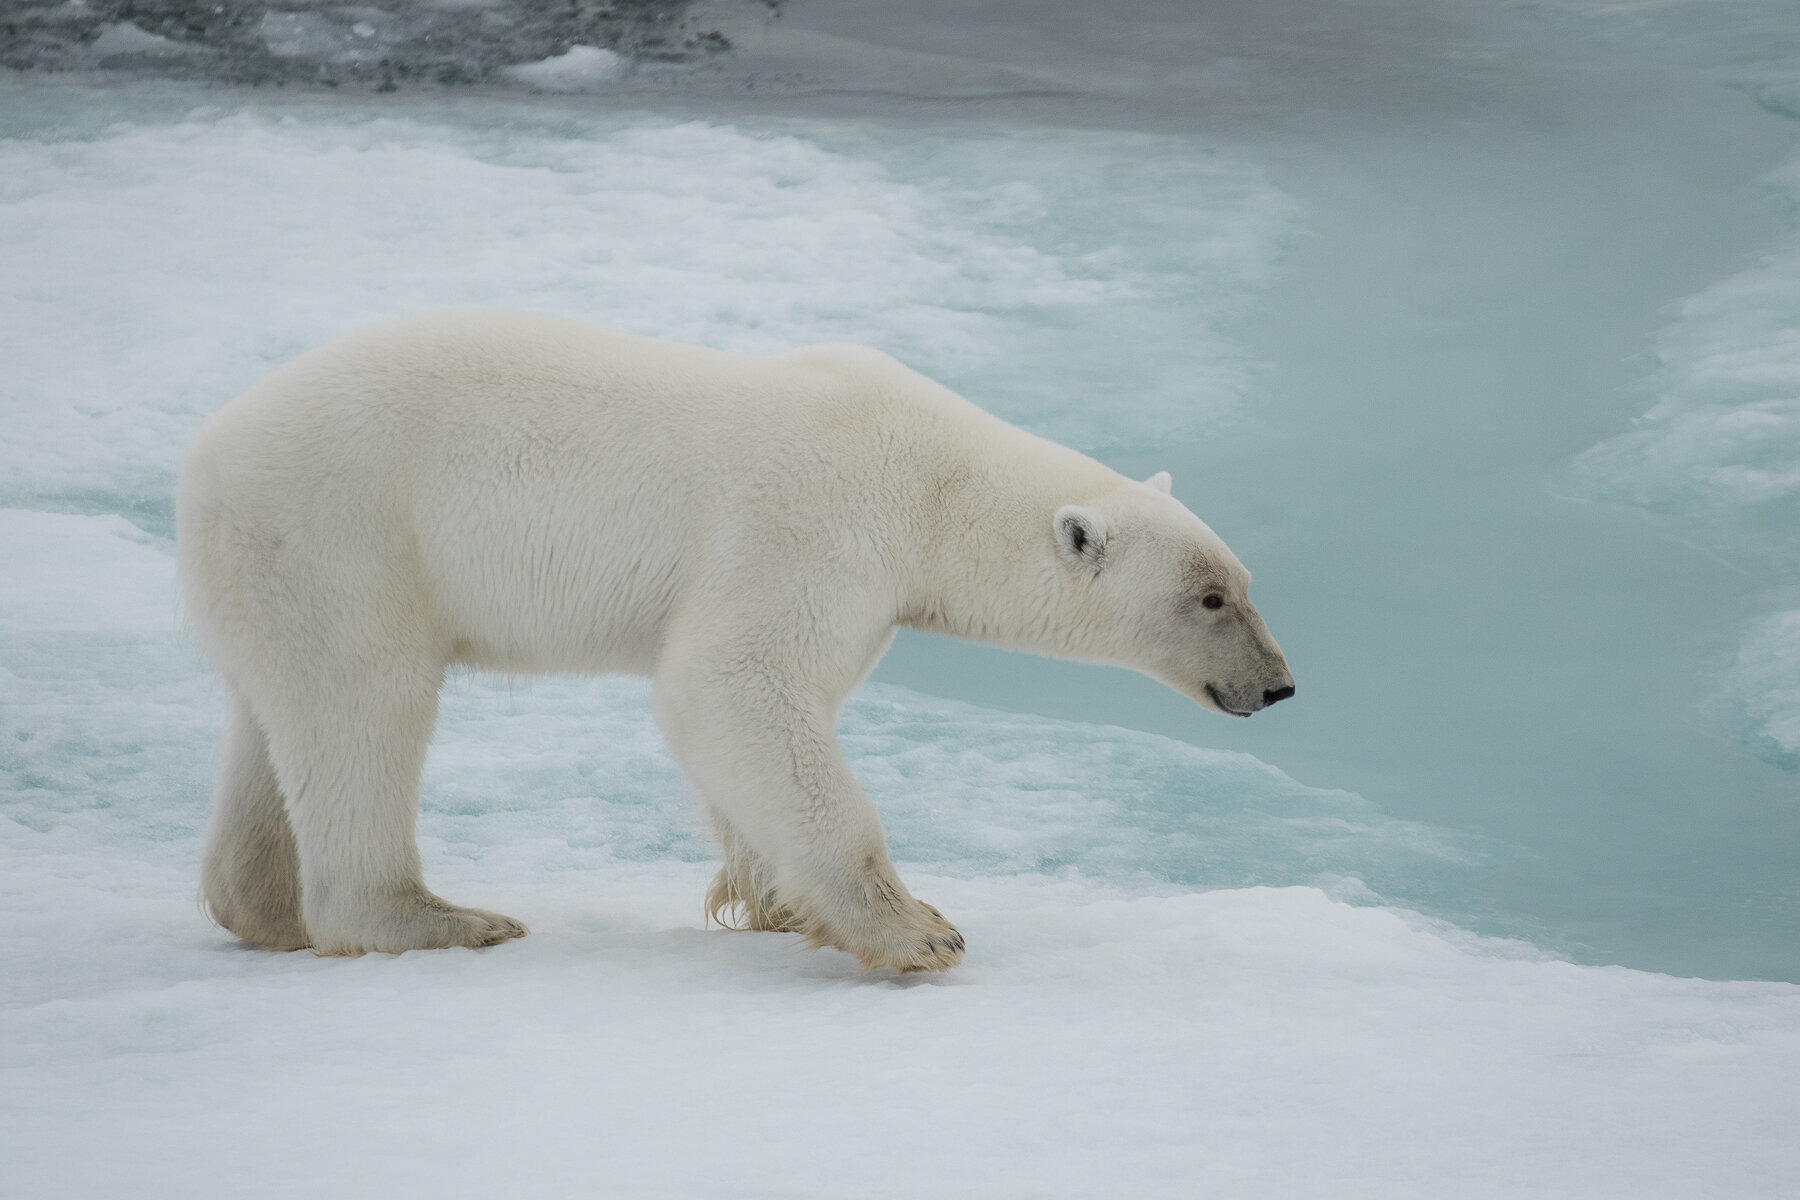  Canadian High Arctic - Polar Bear - clean frame 